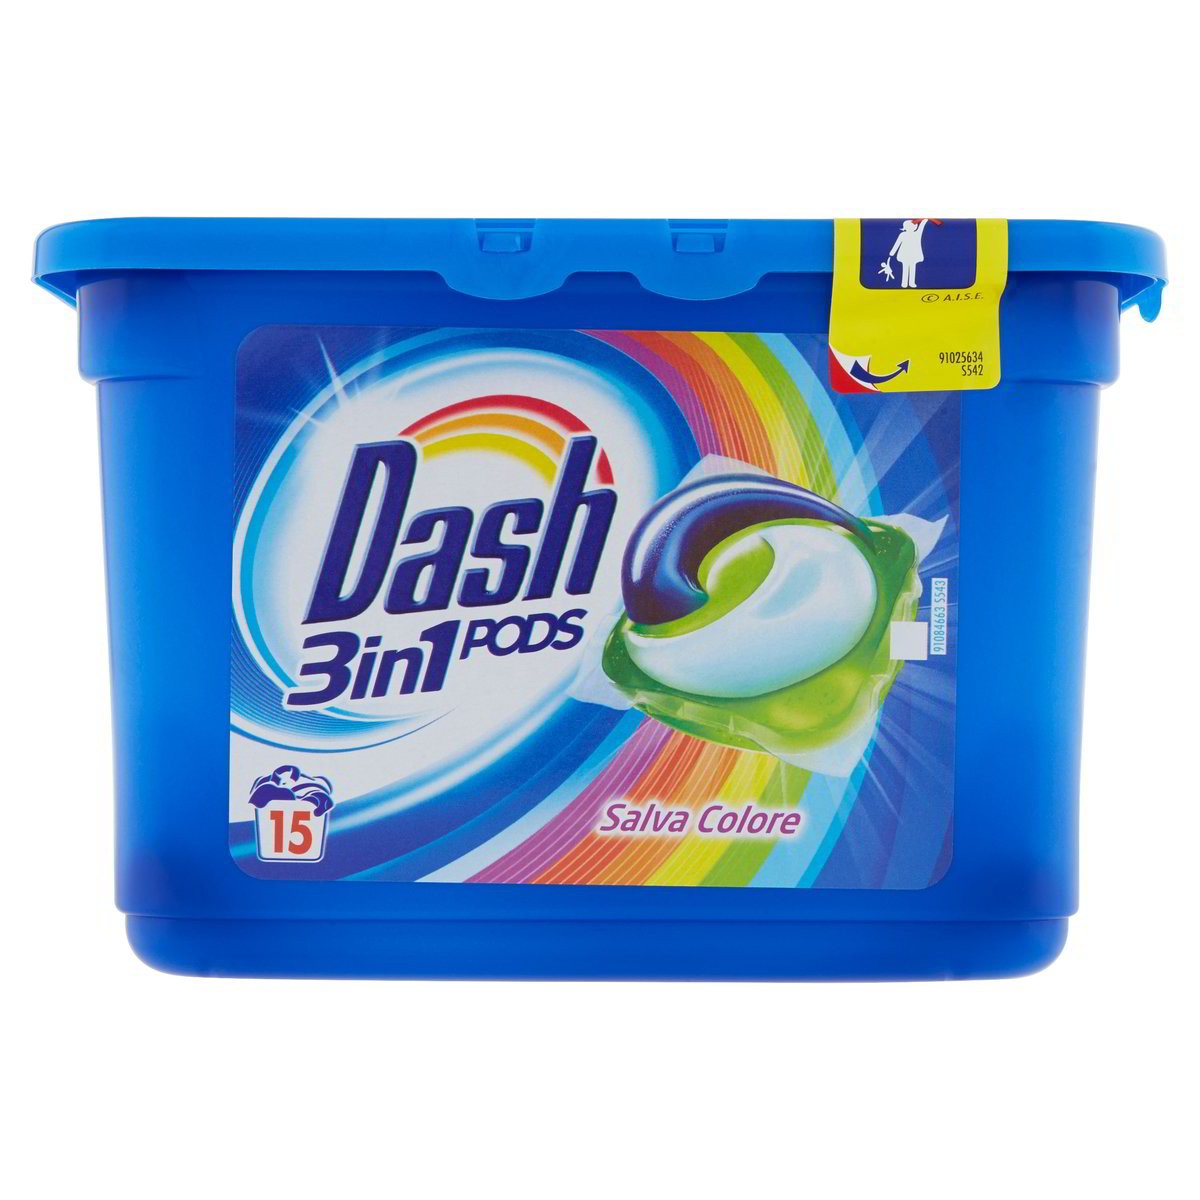 Dash Detersivo lavatrice 3in1 Pods